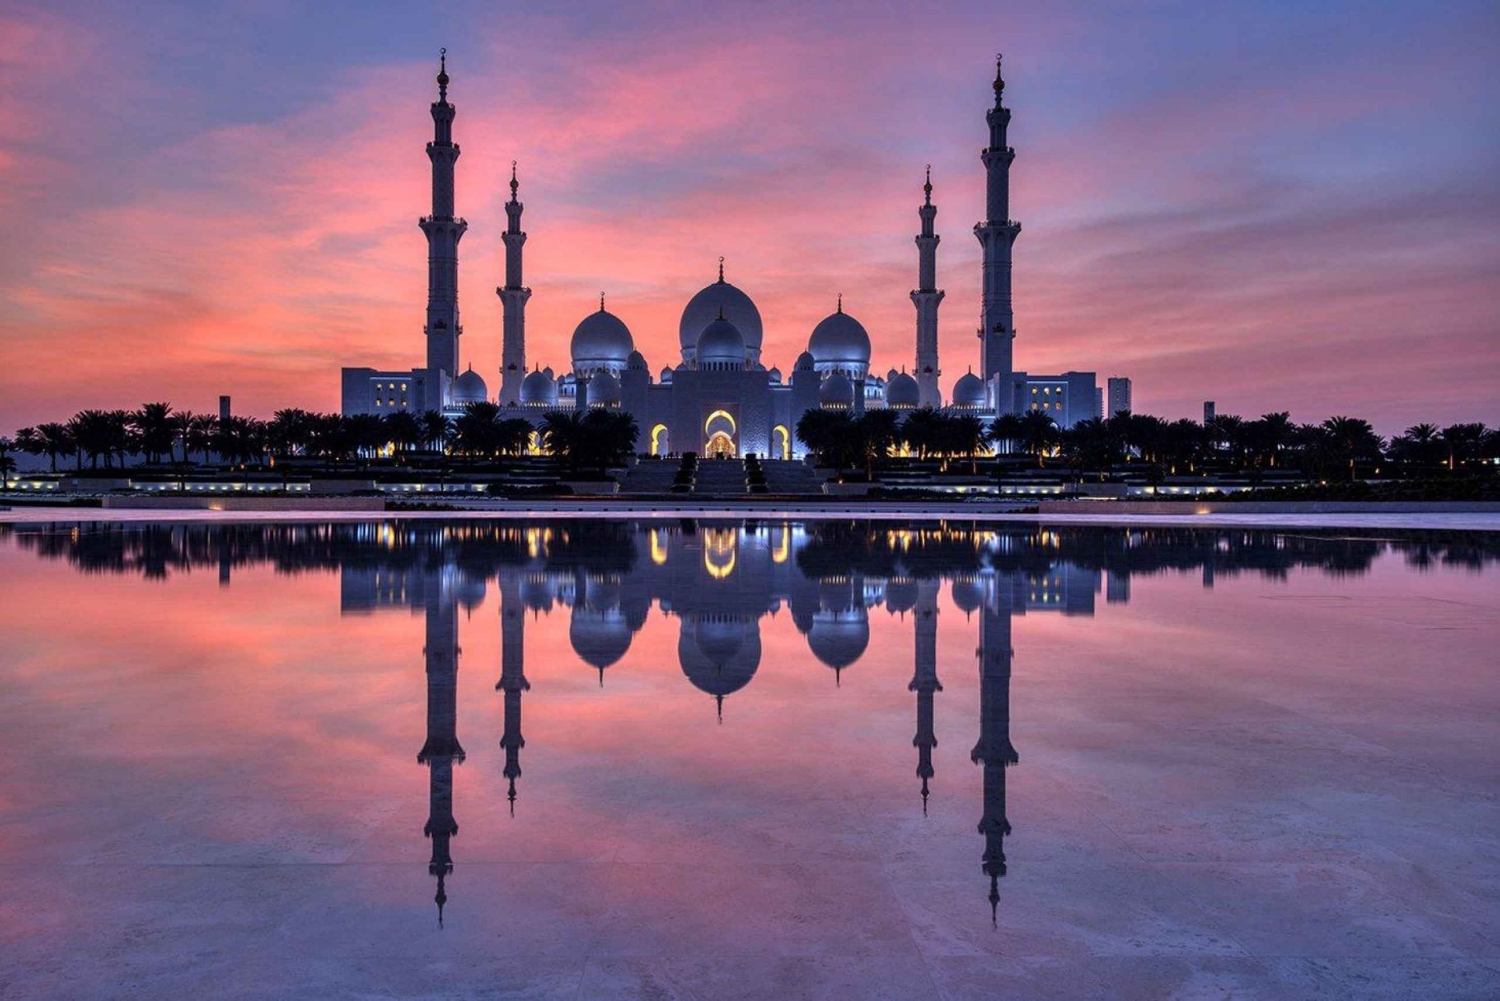 De Dubai: Mesquita de Abu Dhabi e city tour com destaques